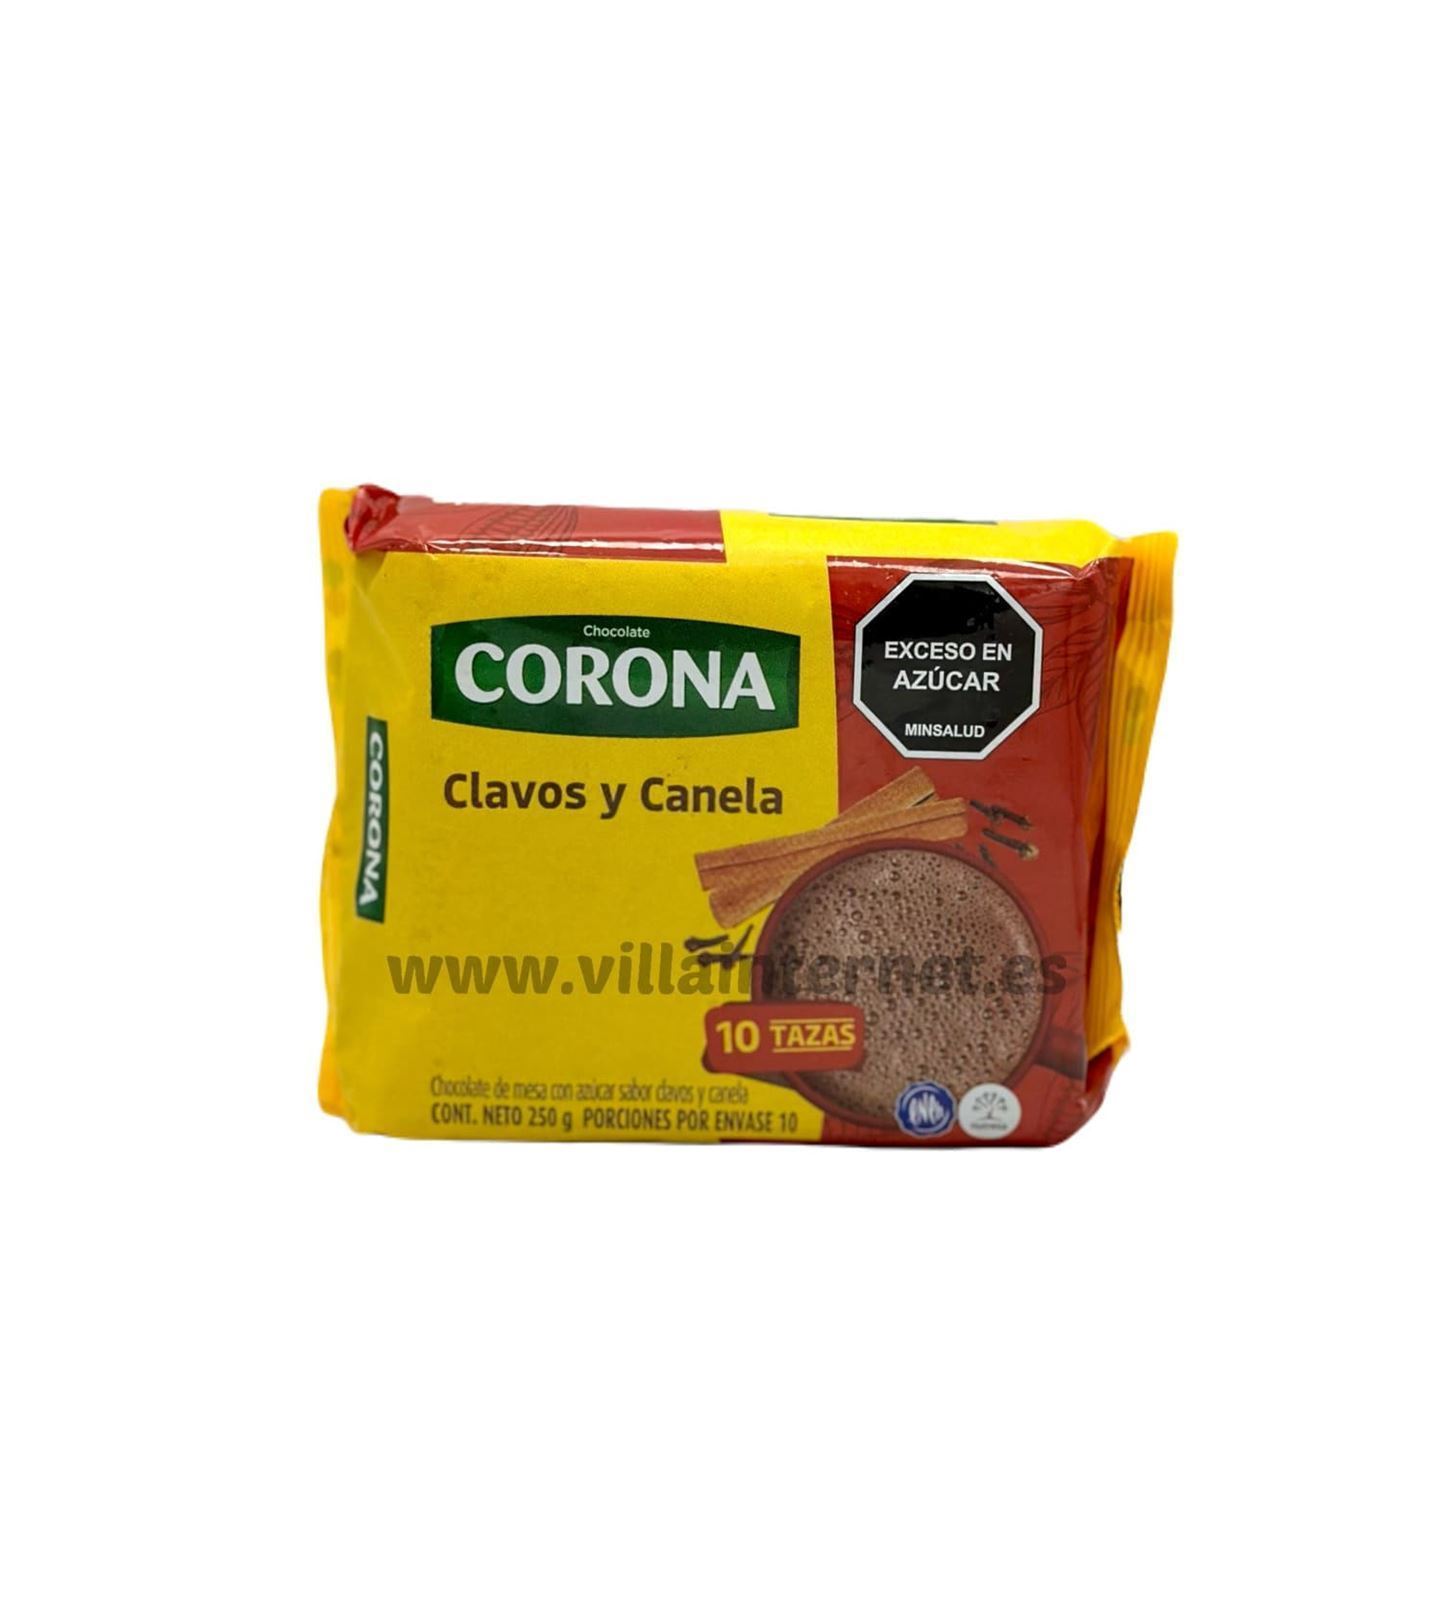 Chocolate de mesa con clavos y canela Corona 250g - Imagen 1